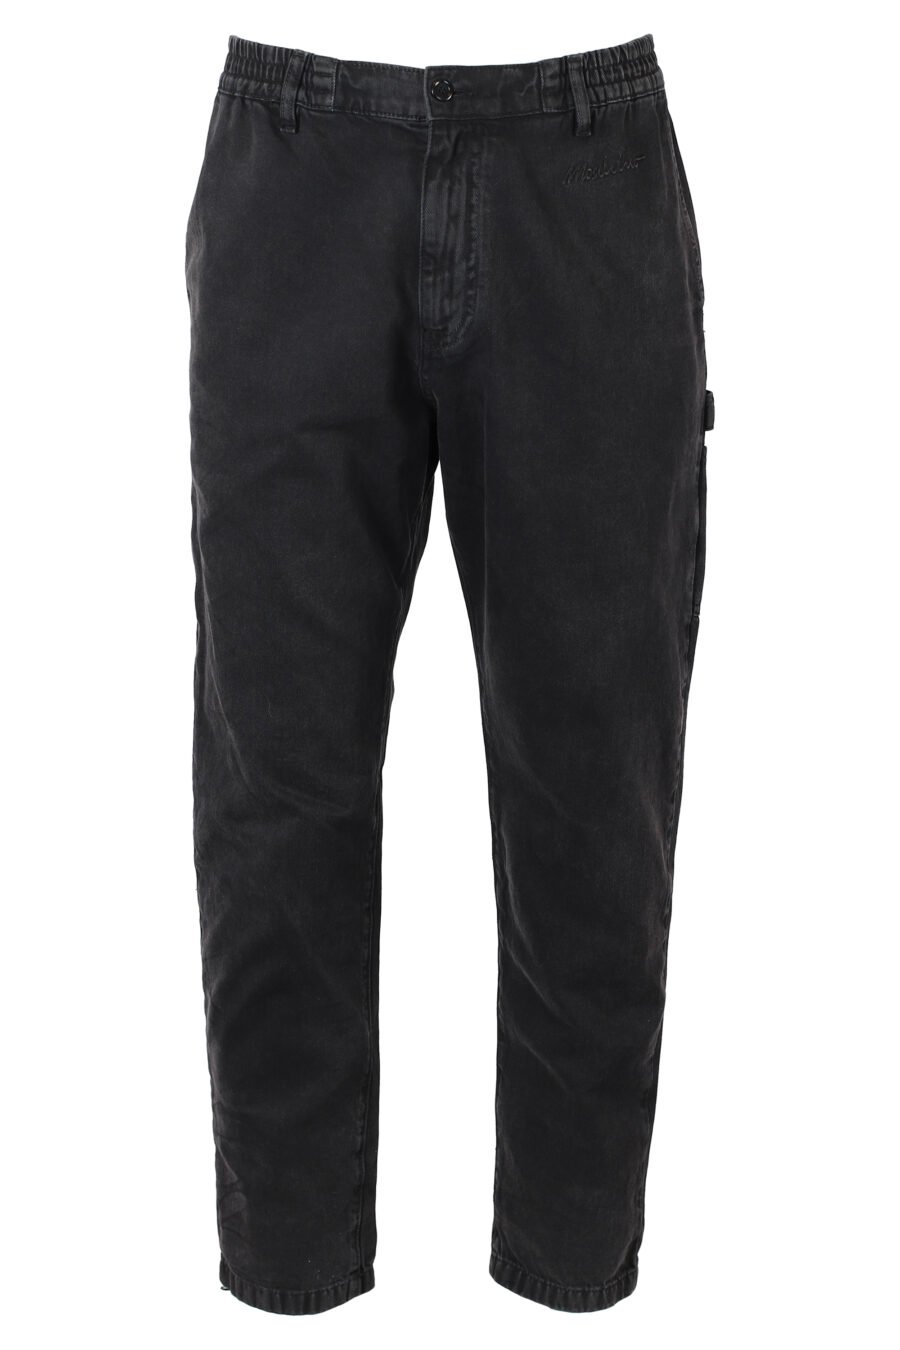 Pantalon en denim noir avec mini logo monochrome - IMG 9877